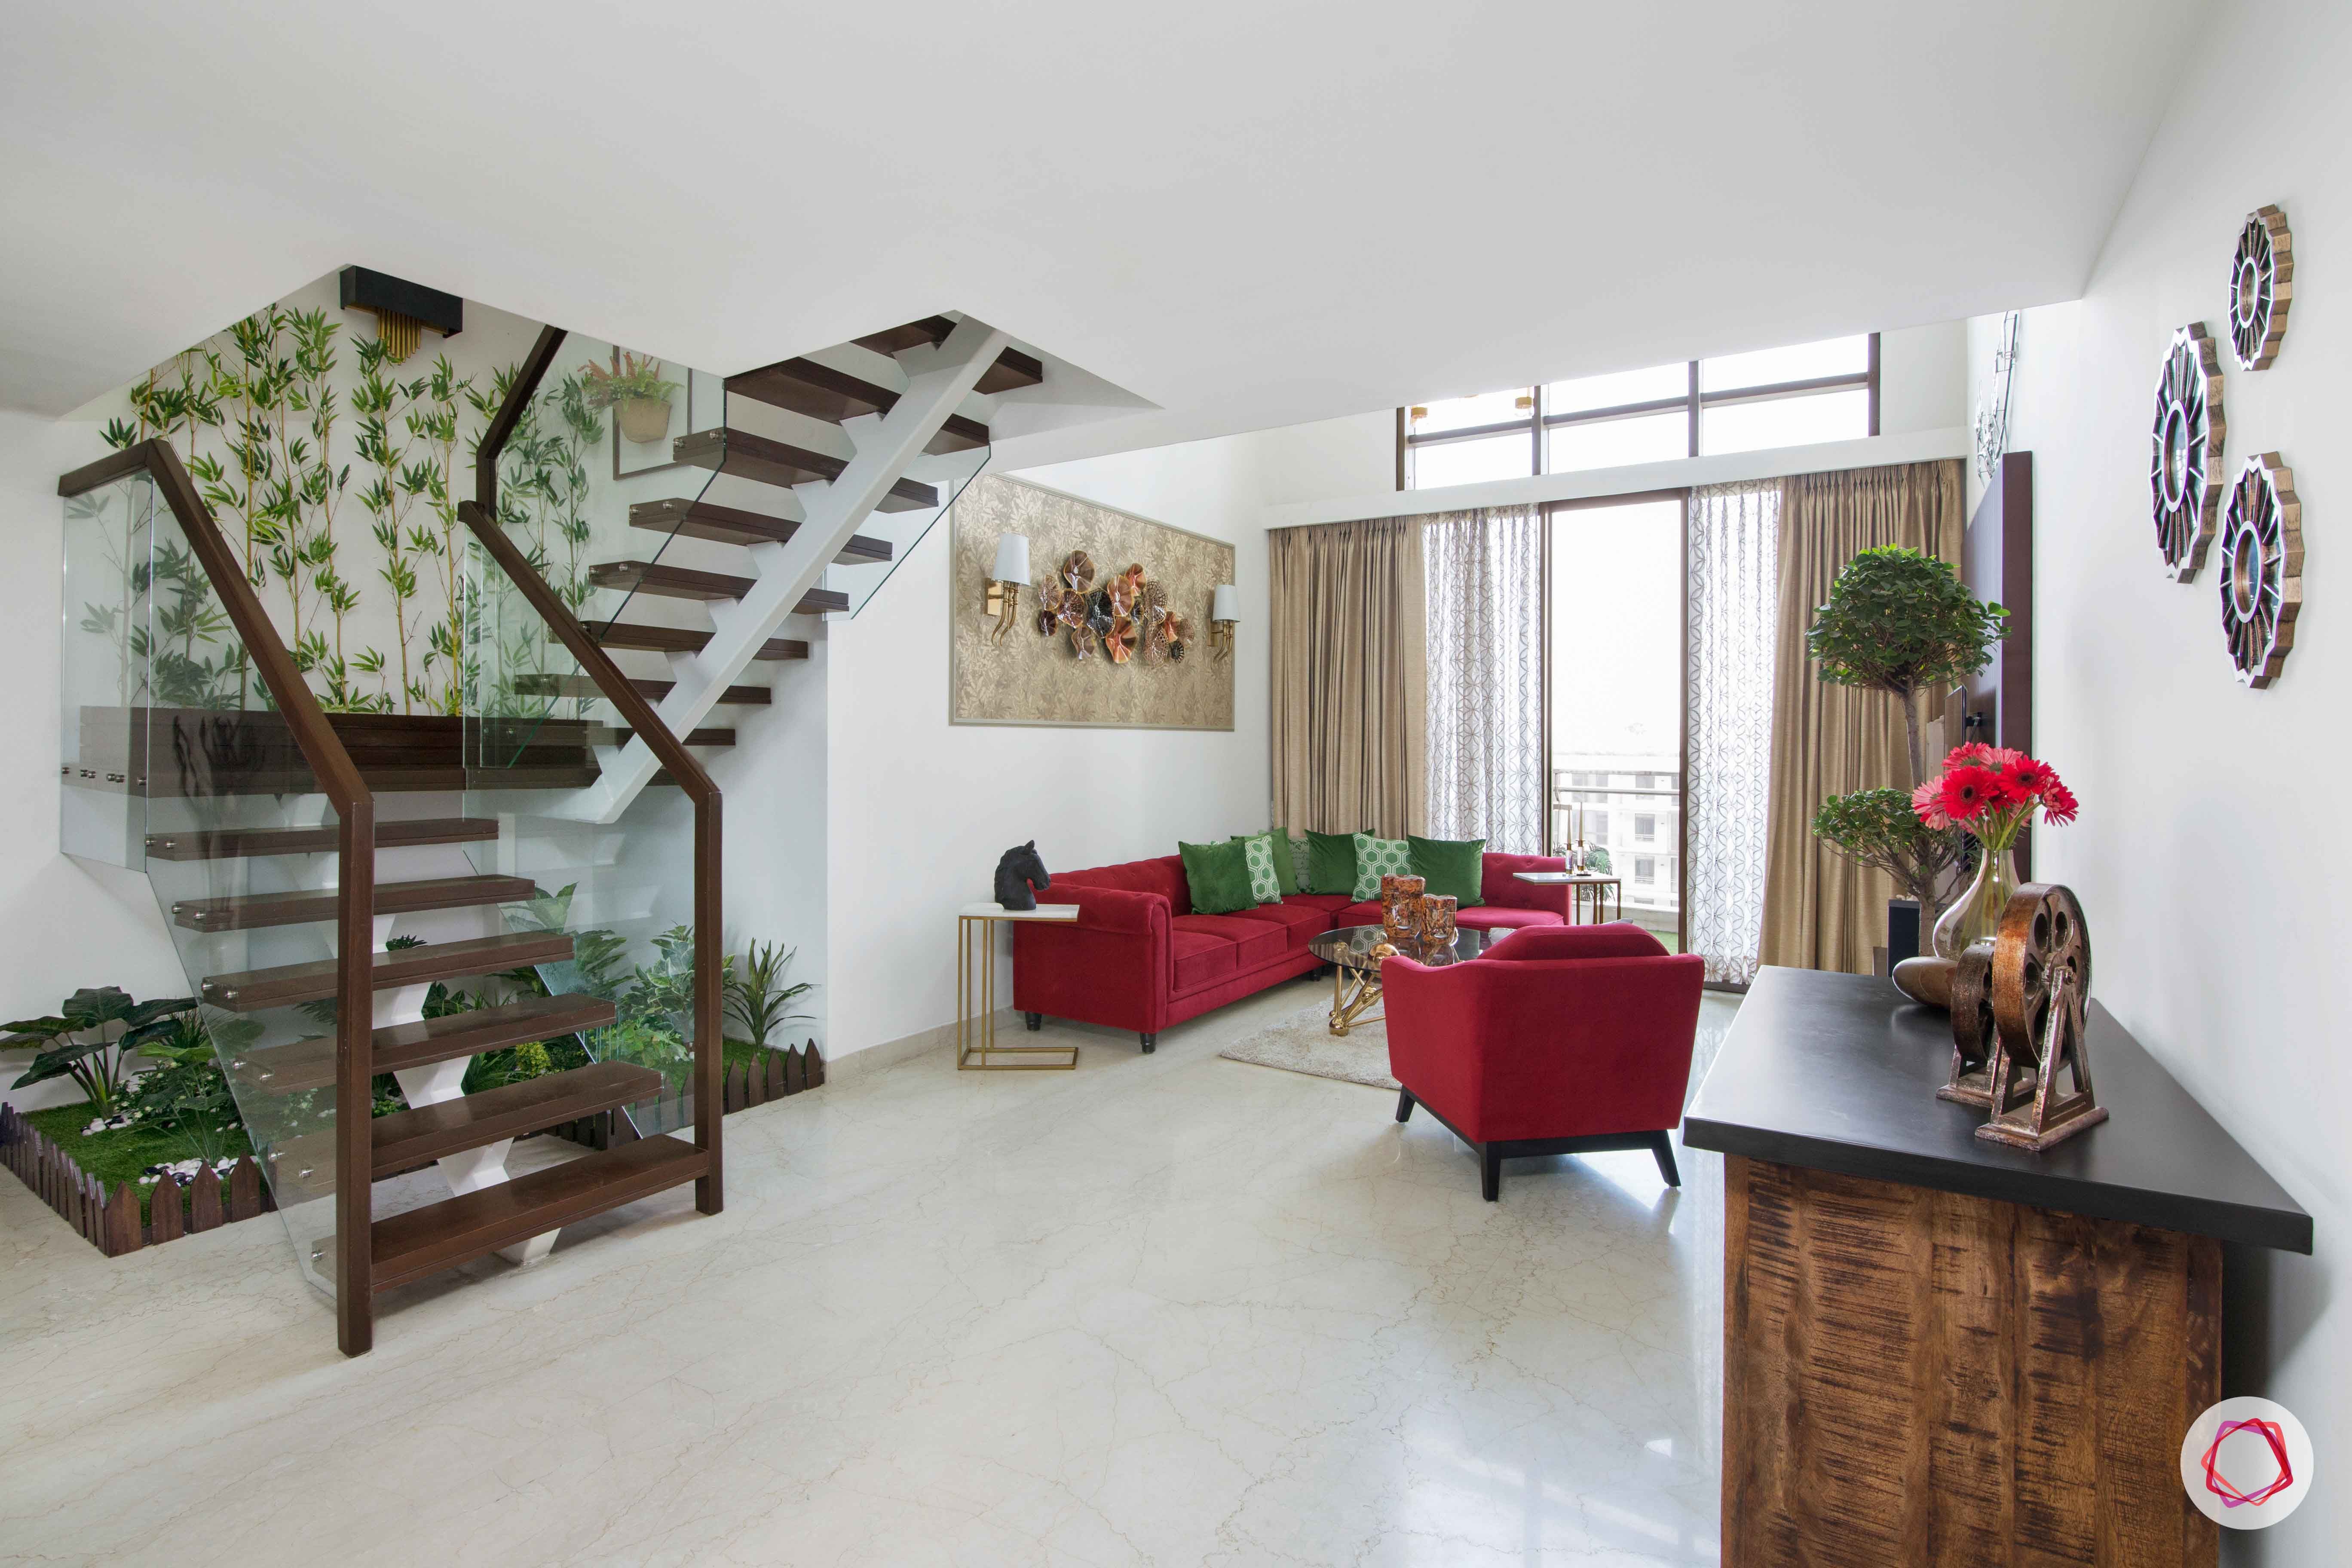 duplex house images-duplex house designs-red sofa designs-bar unit designs